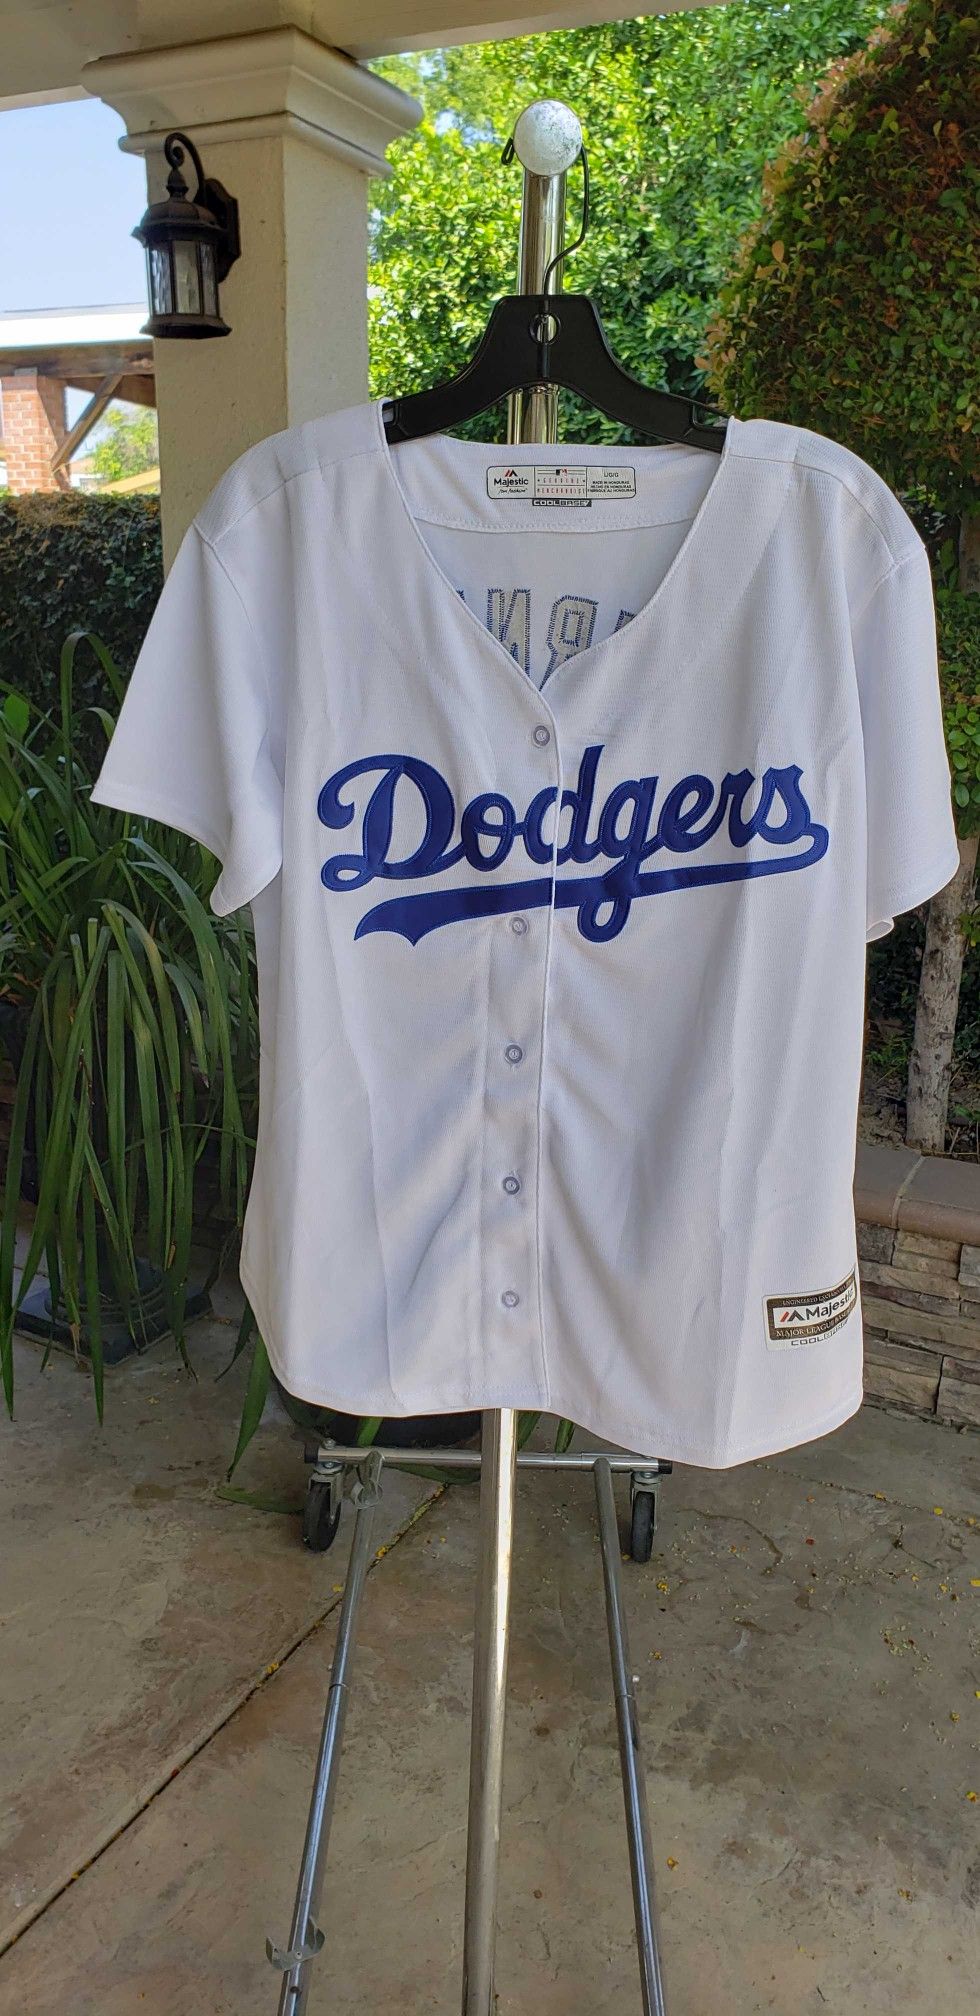 Los Angeles Dodgers Women's Jersey Kike Hernandez for Sale in El Monte, CA  - OfferUp